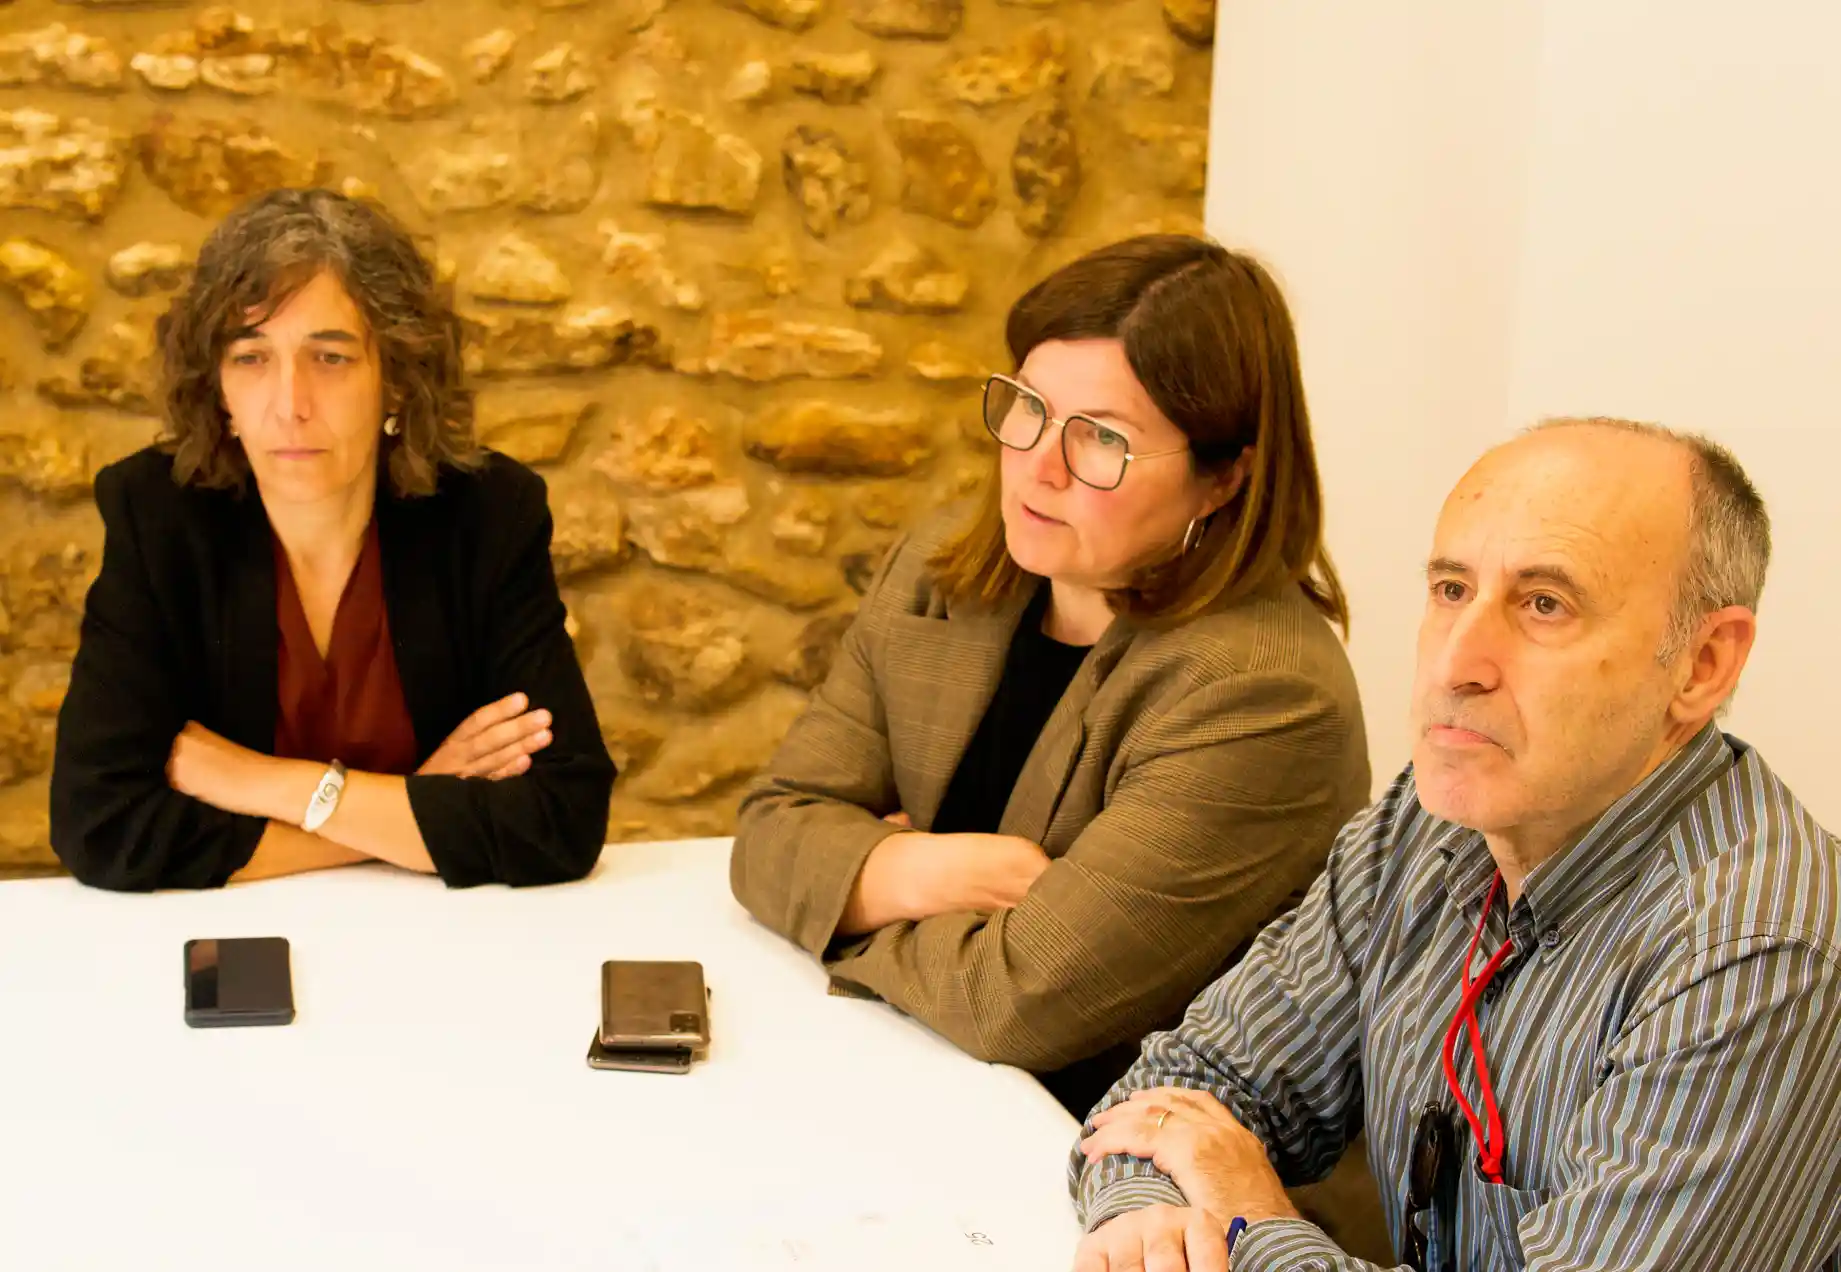 La Secretaria Autonómica de Política Territorial visita la IGP Castelló